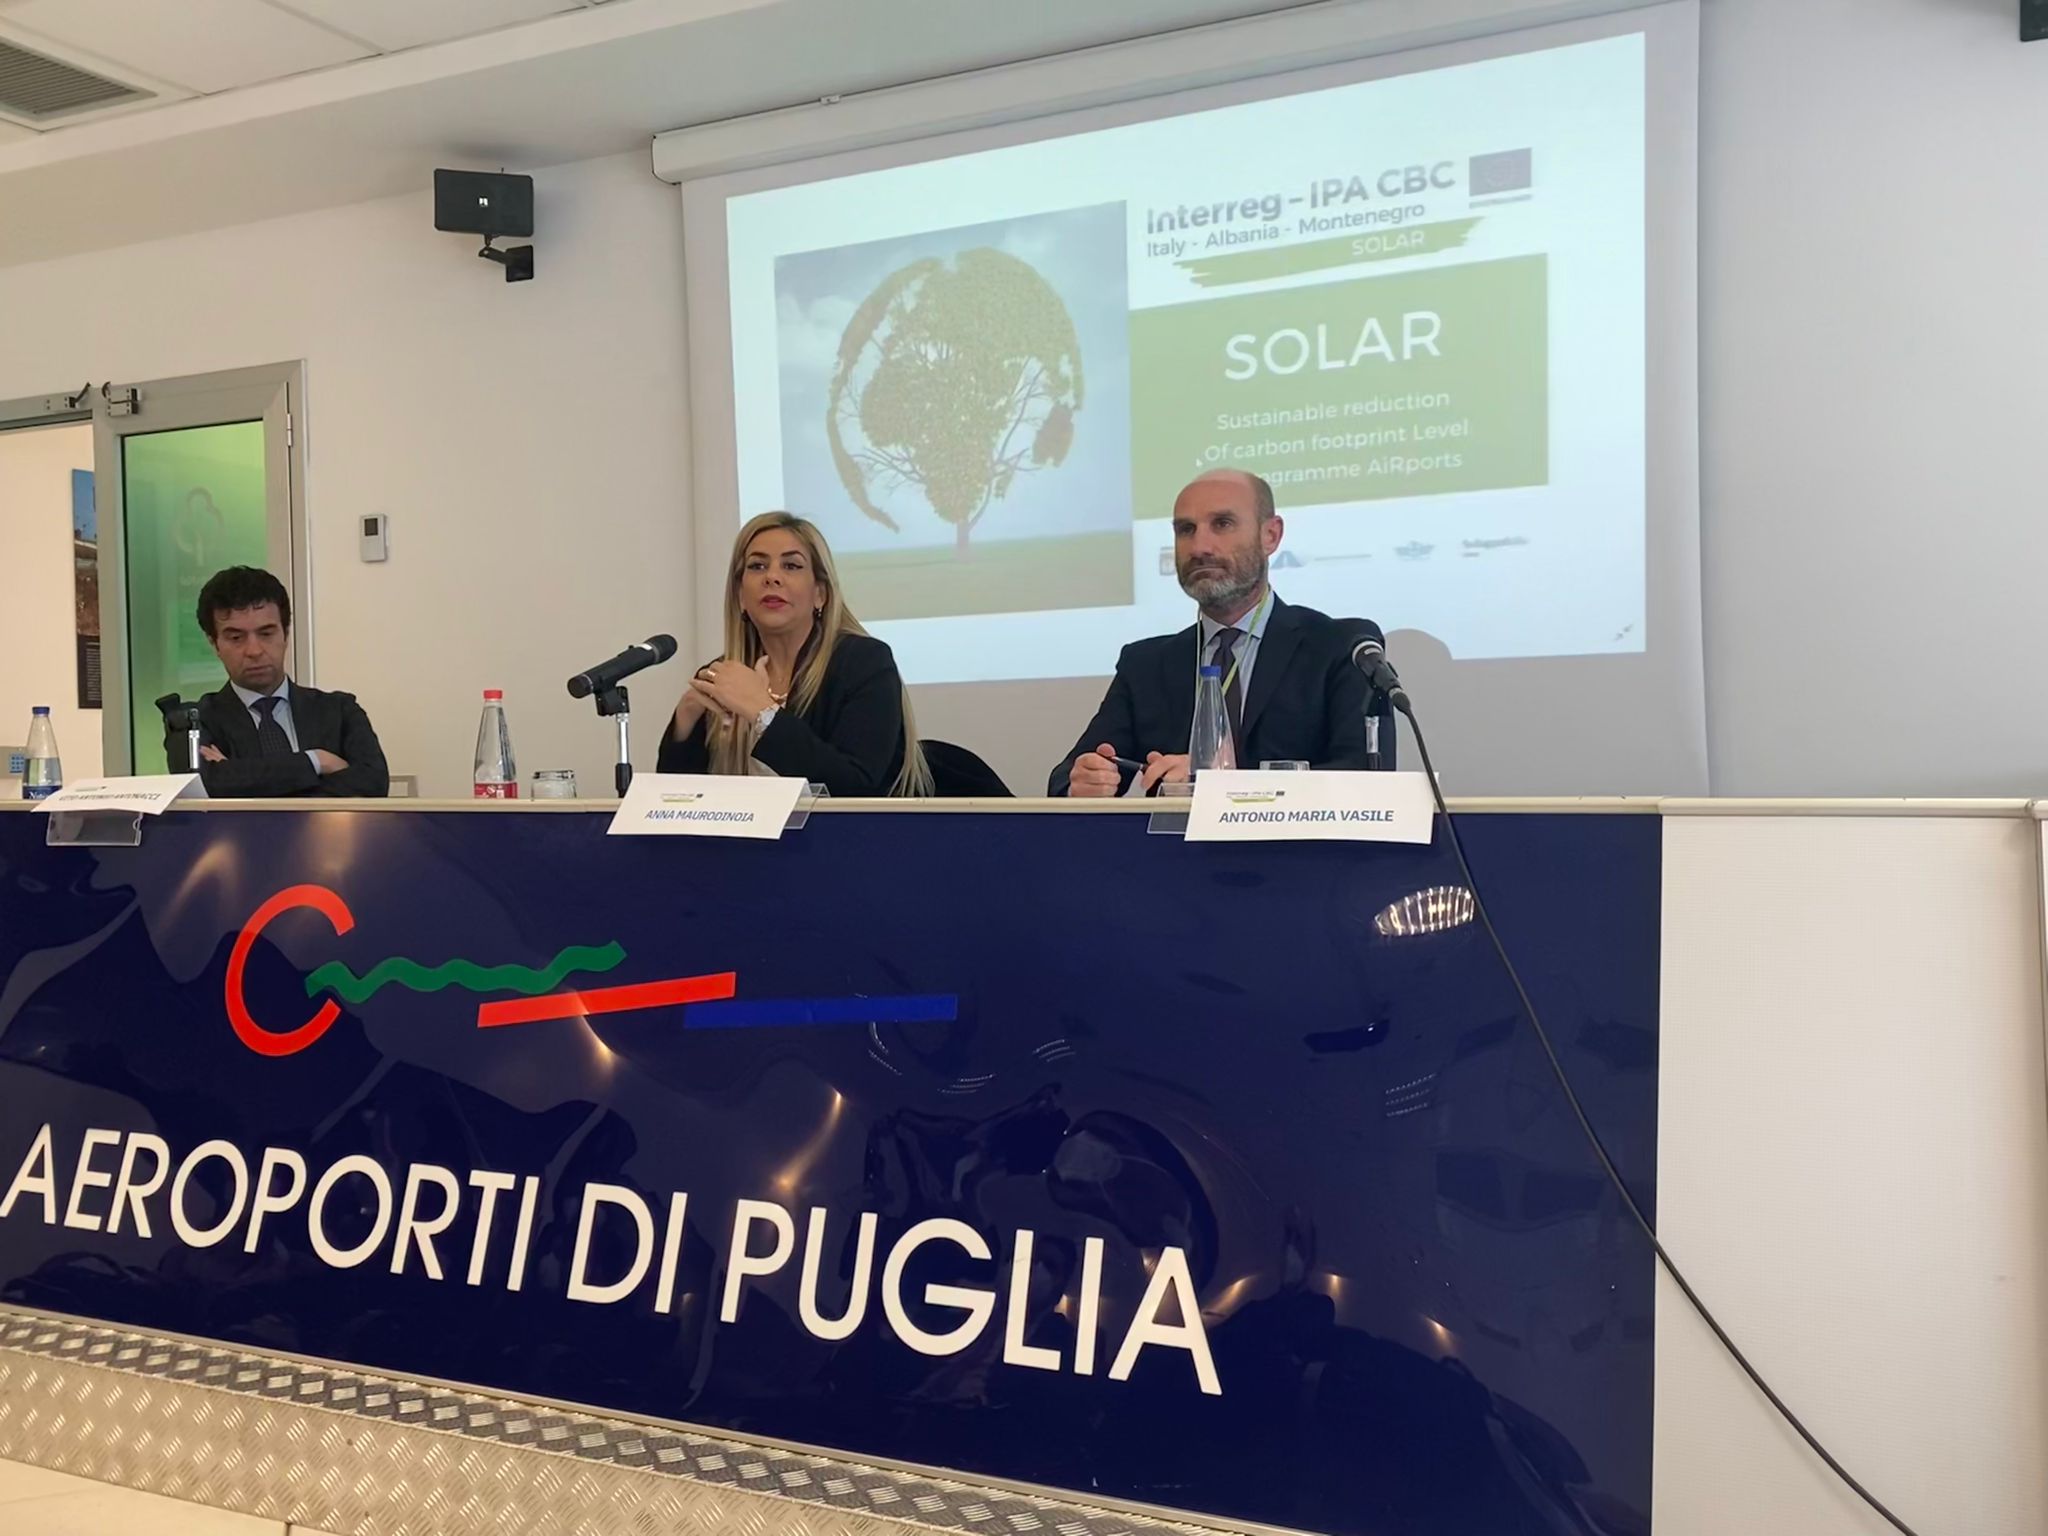 Galleria Progetto di cooperazione SOLAR: verso una gestione sostenibile degli aeroporti e lo scambio di buone pratiche tra Puglia, Molise, Montenegro e Albania - Diapositiva 4 di 7